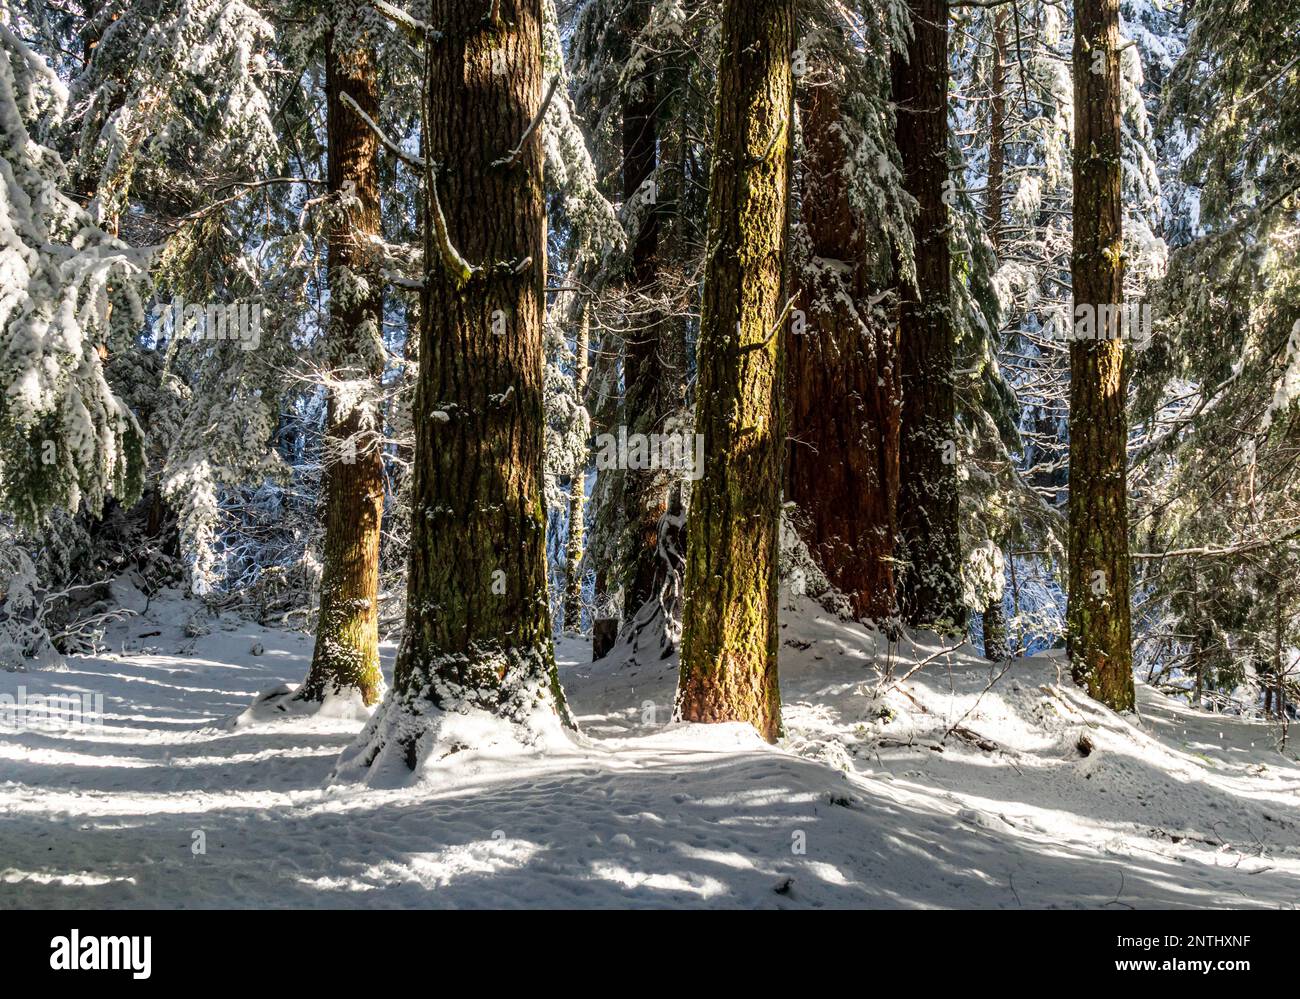 Hiver et neige fraîche dans la forêt de l'île de Vancouver, Colombie-Britannique, Canada, soleil à travers les grands Fir et les cèdres. Banque D'Images